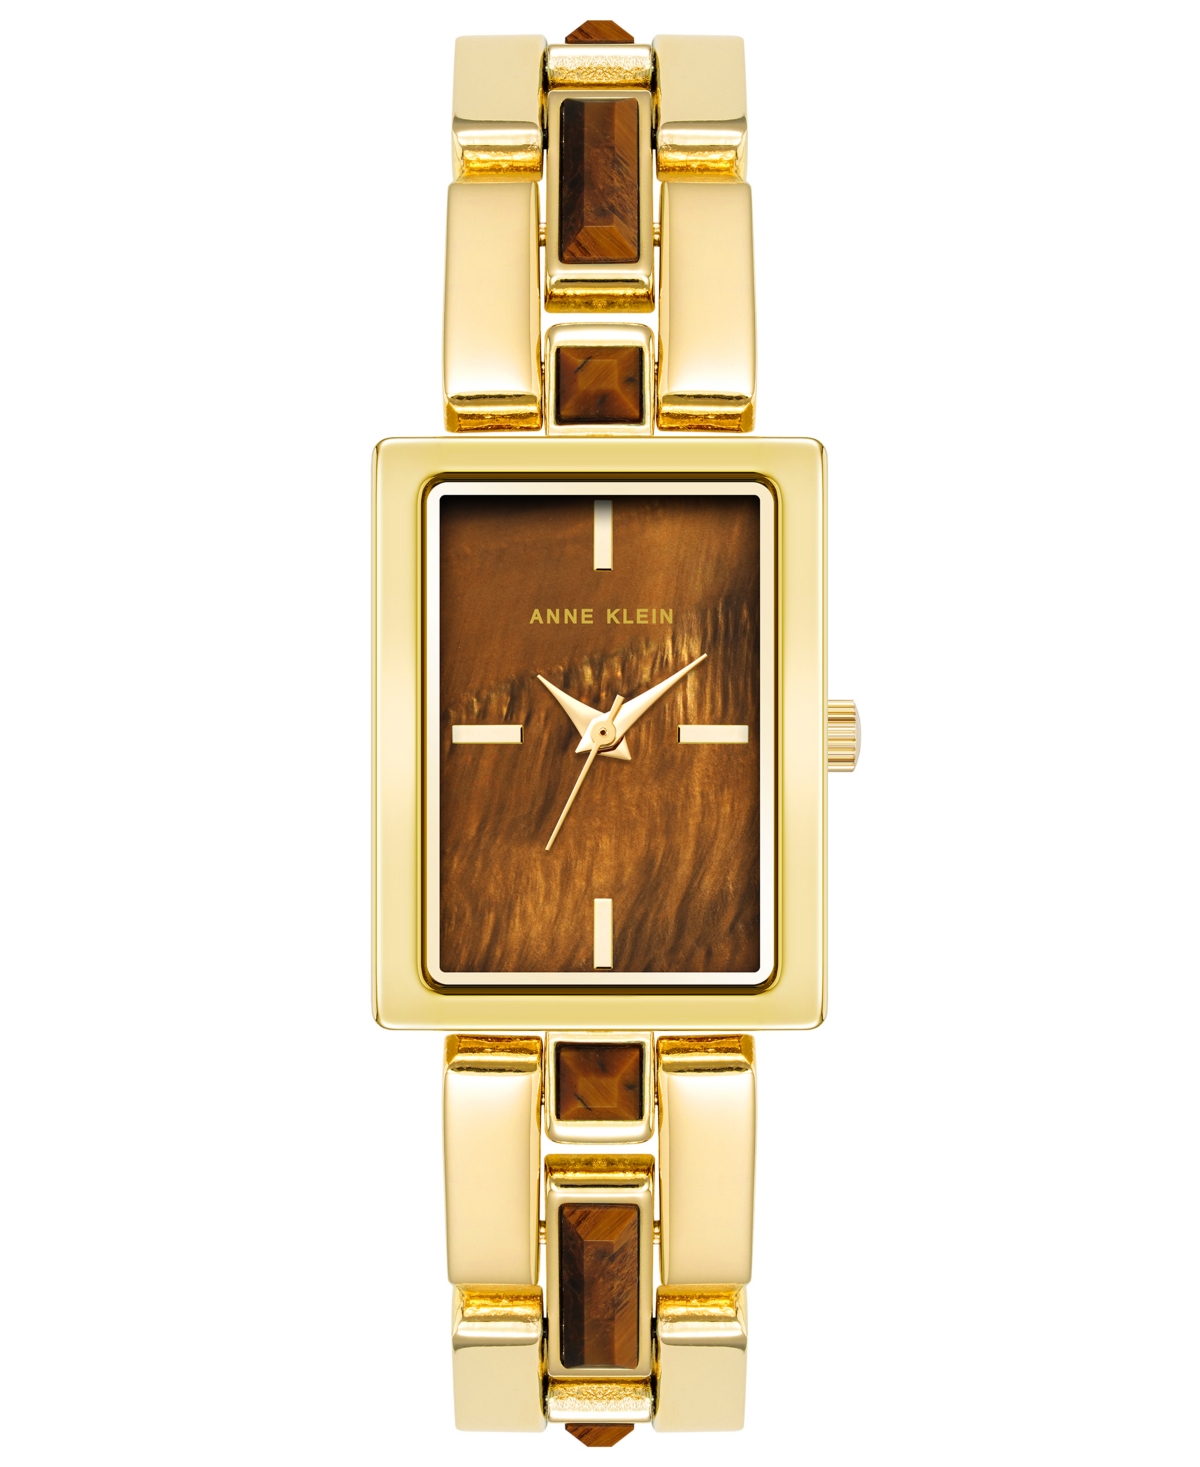 Anne Klein Women's Quartz Gold-tone Alloy Watch, 28mm X 21mm In Brown,gold-tone